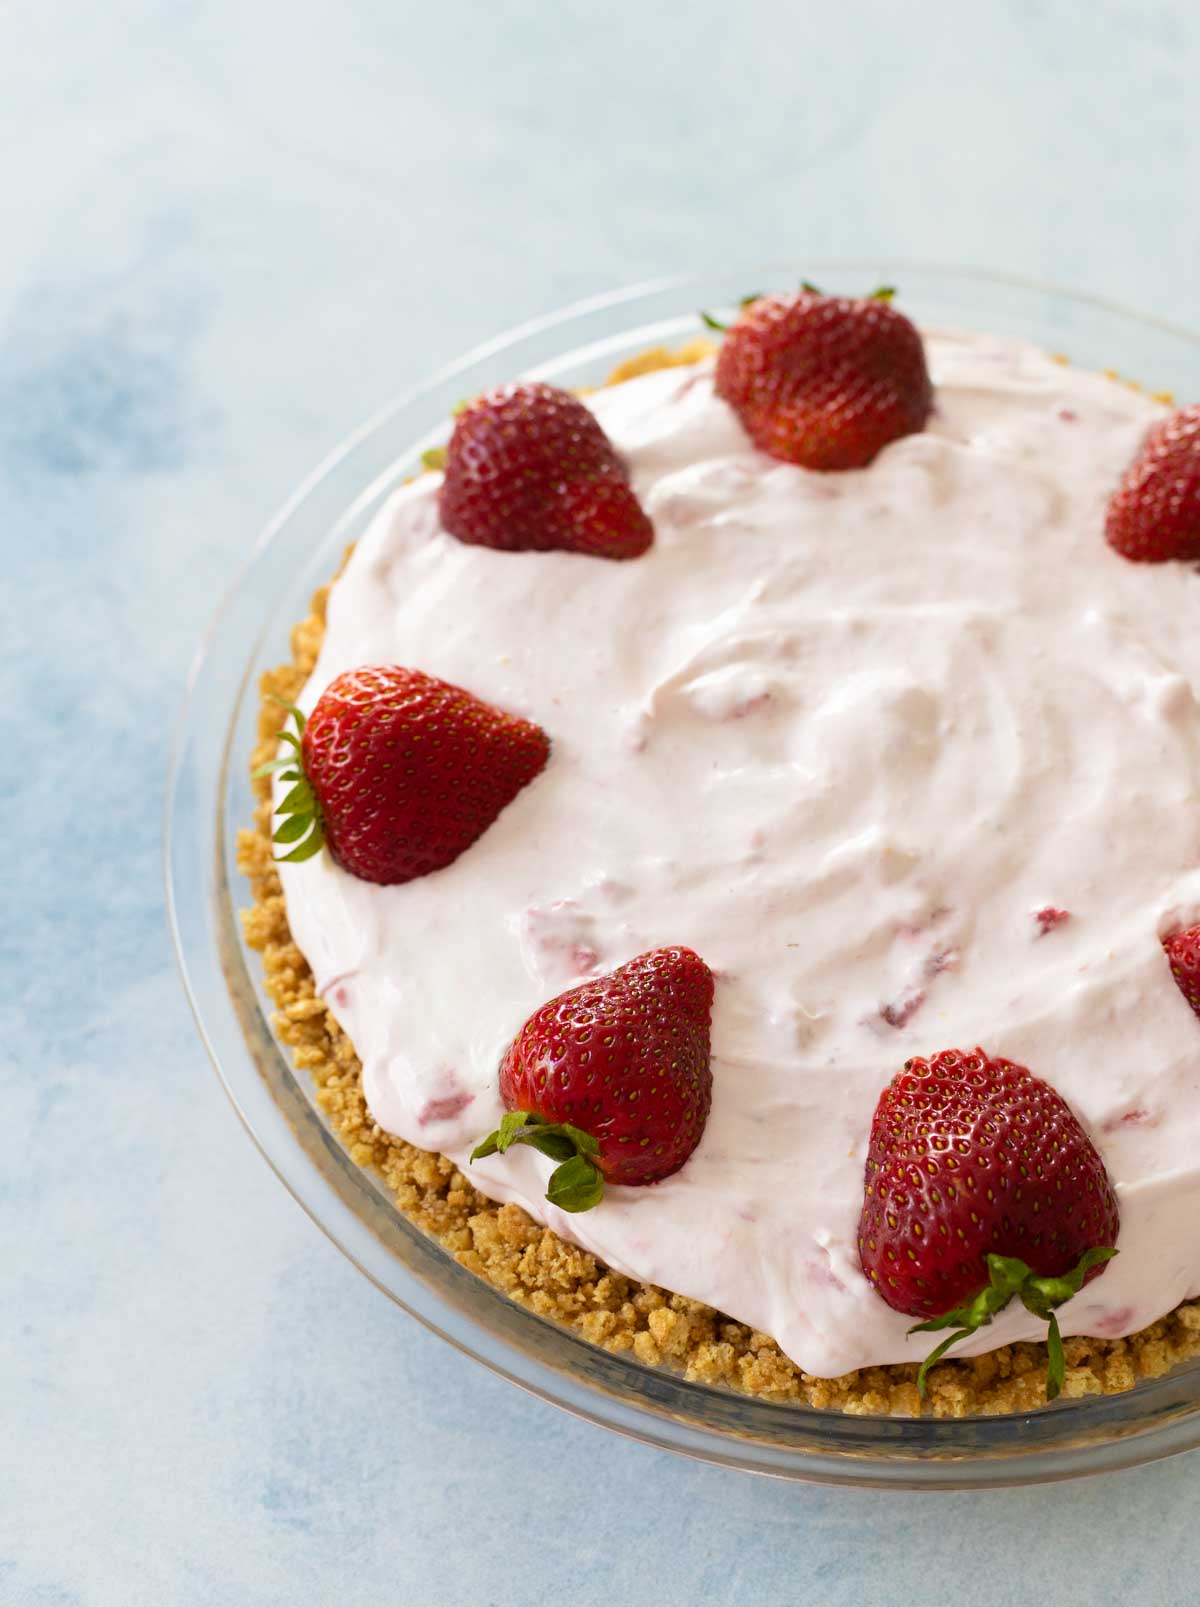 The garnished strawberry cream pie has fresh strawberries around the edge.